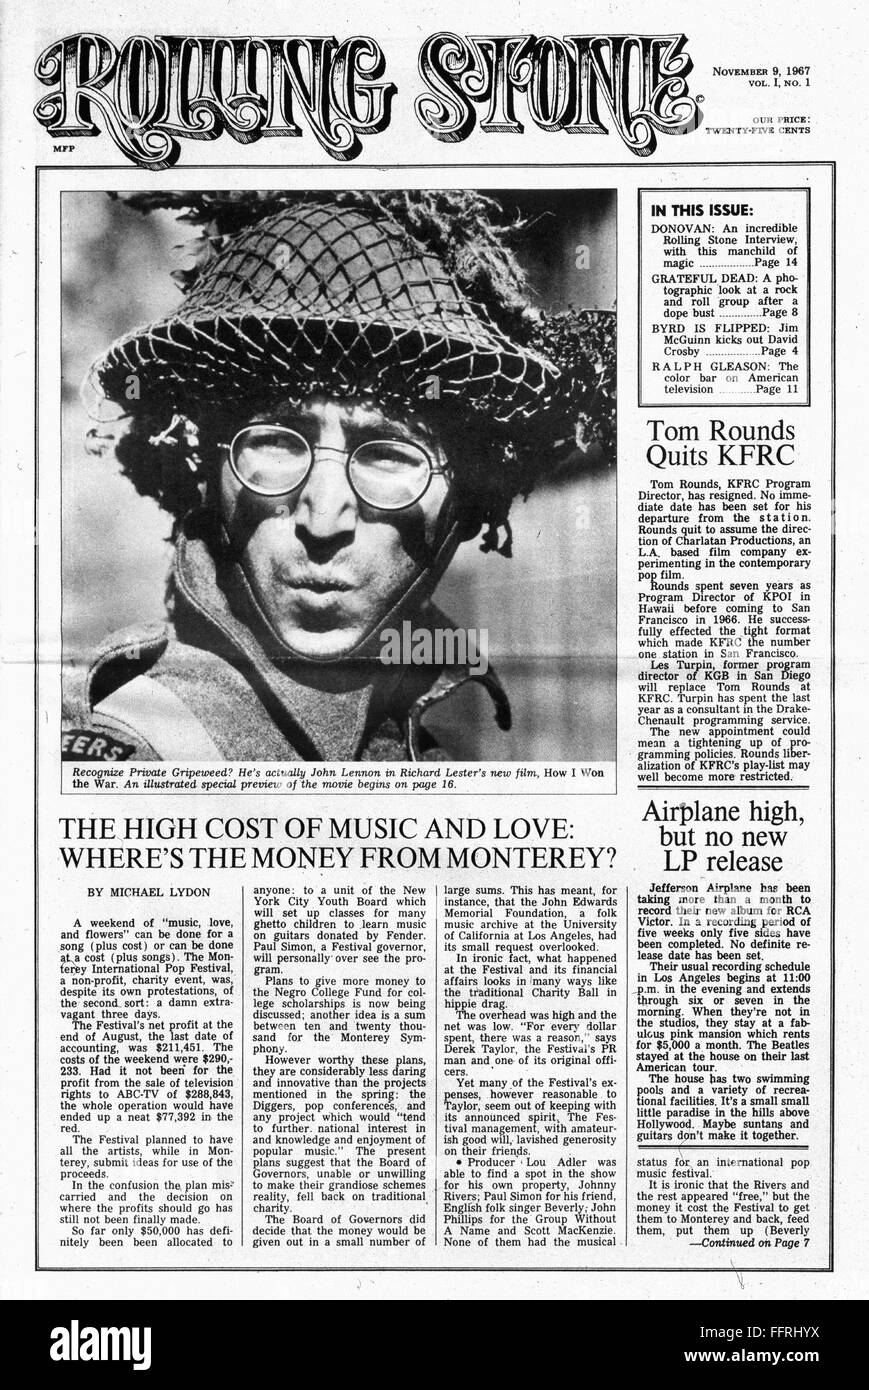 ROLLING STONE, 1967. /NFront page du premier numéro de Rolling Stone  Magazine', 9 novembre 1967, présentant une photographie de musicien rock  John Lennon des Beatles qu'il était apparu pendant la lecture d'un